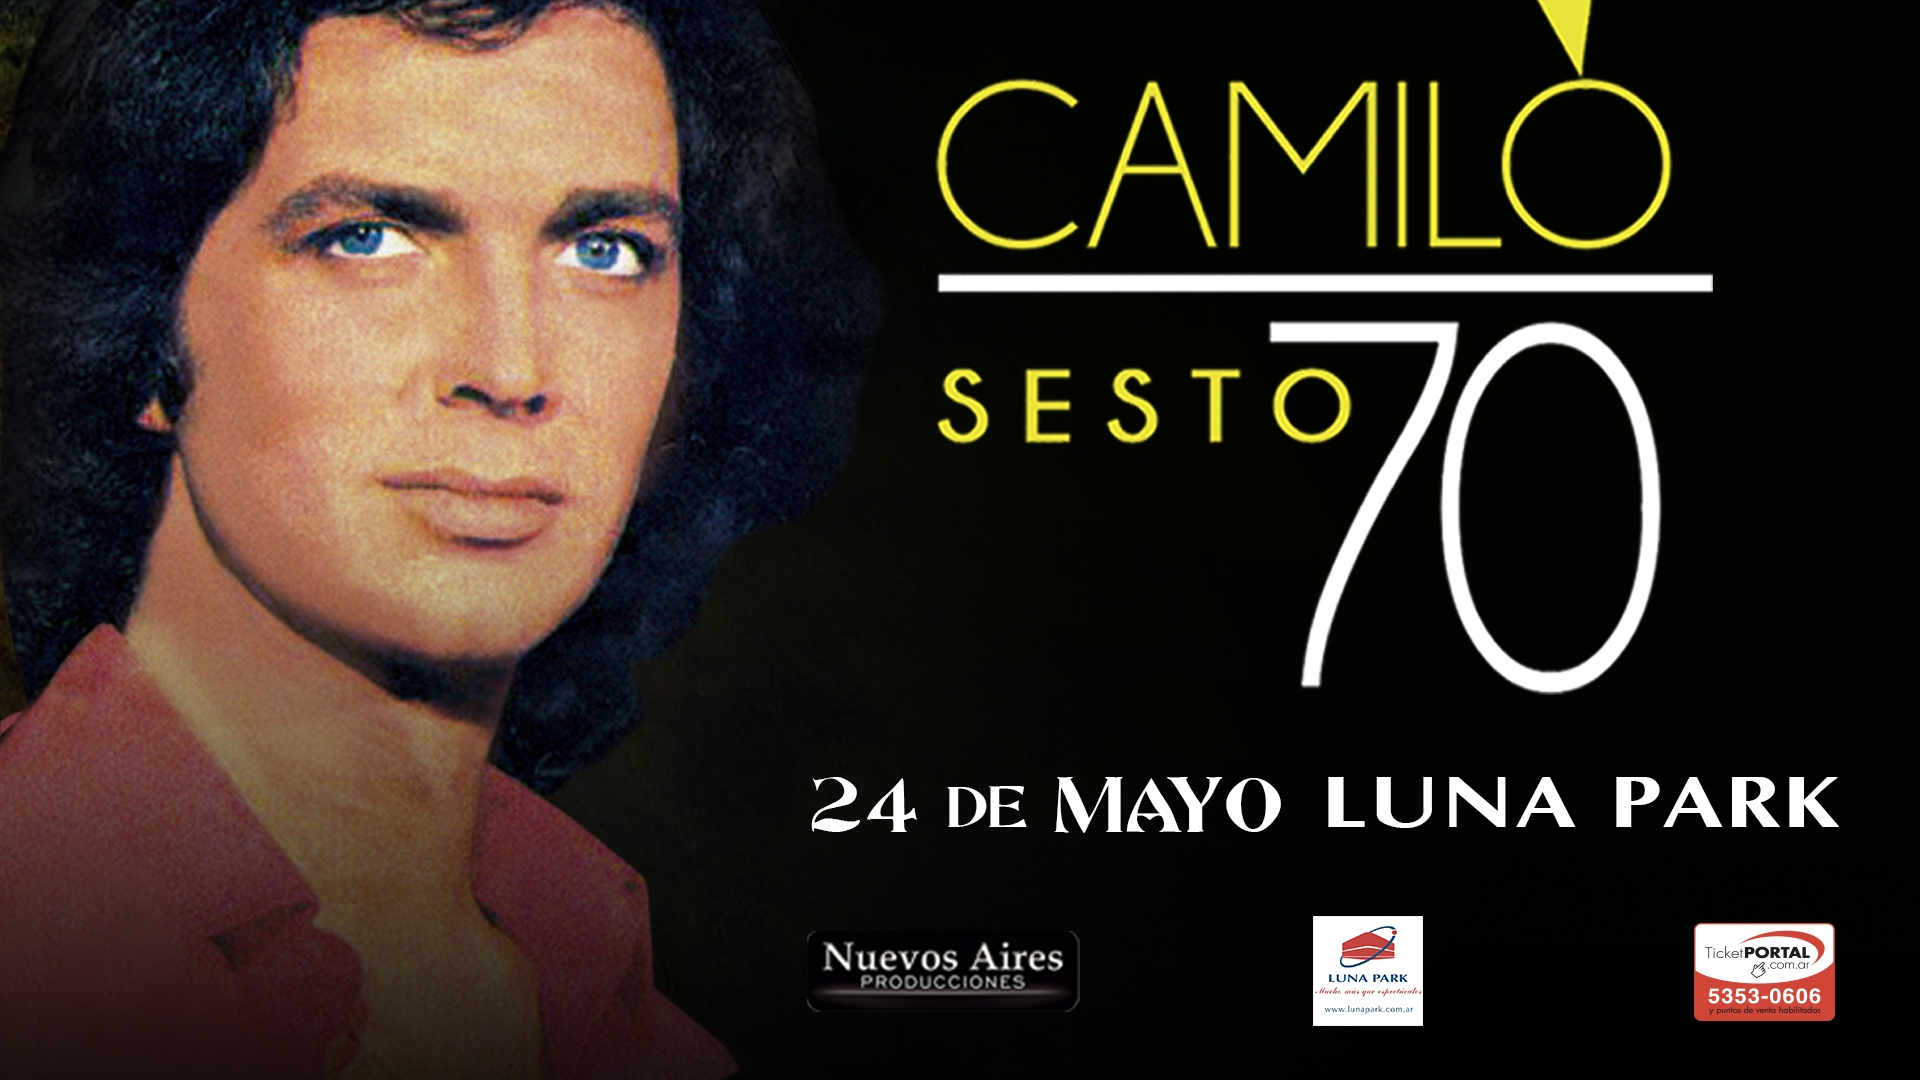 Camilo Sesto "Tour 2017", 24 de mayo en Argentina, Estadio Luna Park!